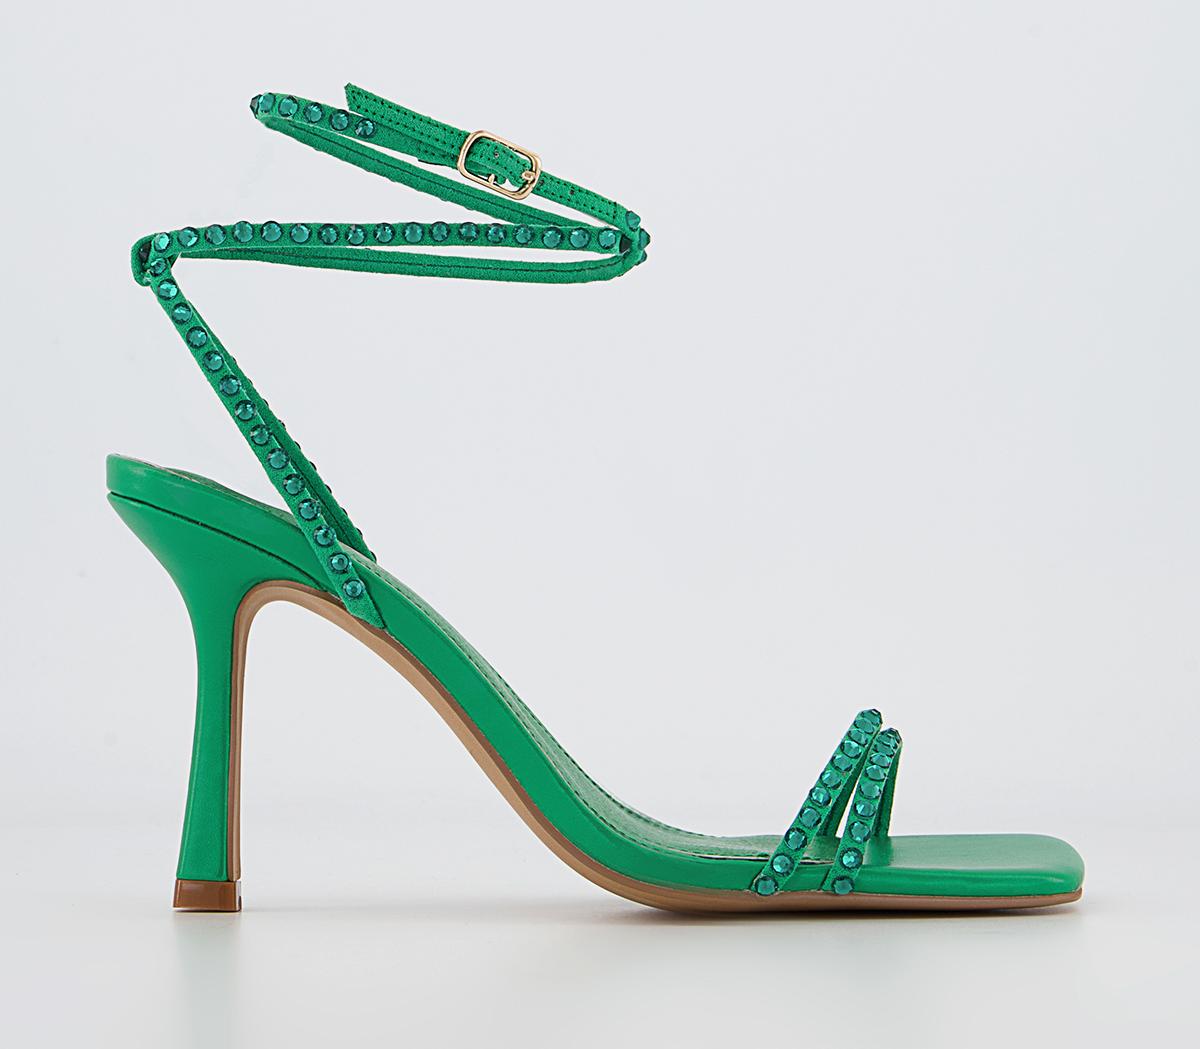 OFFICE Hazel Embellished High Ankle Sandals Green - Heels